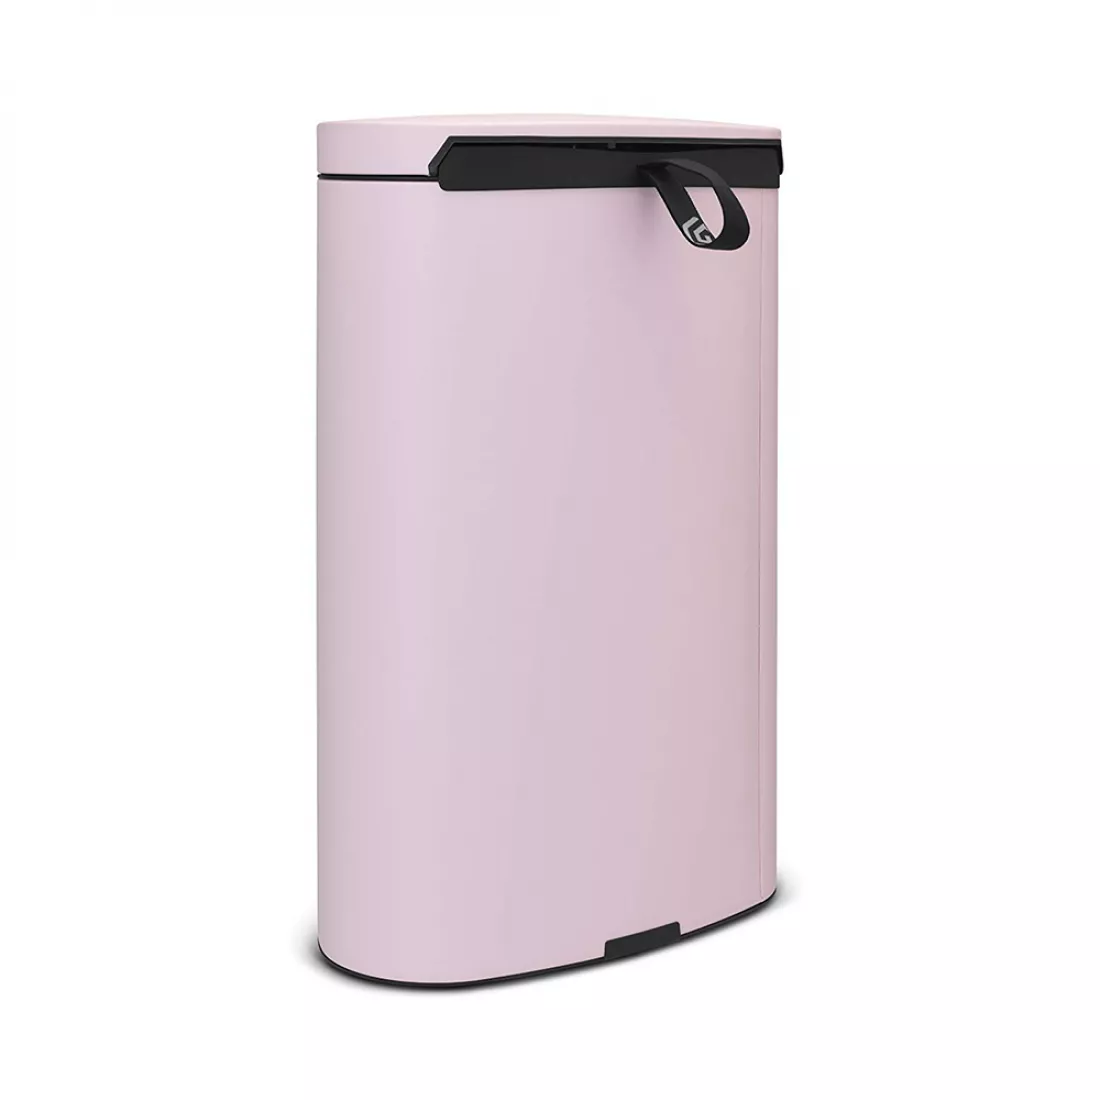 Контейнер для мусора с педалью, объем: 40 л, материал: нержавеющая сталь, цвет: розовый, серия FlatBack, B103926, BRABANTIA, Бельгия от магазина ЛесКонПром.ру